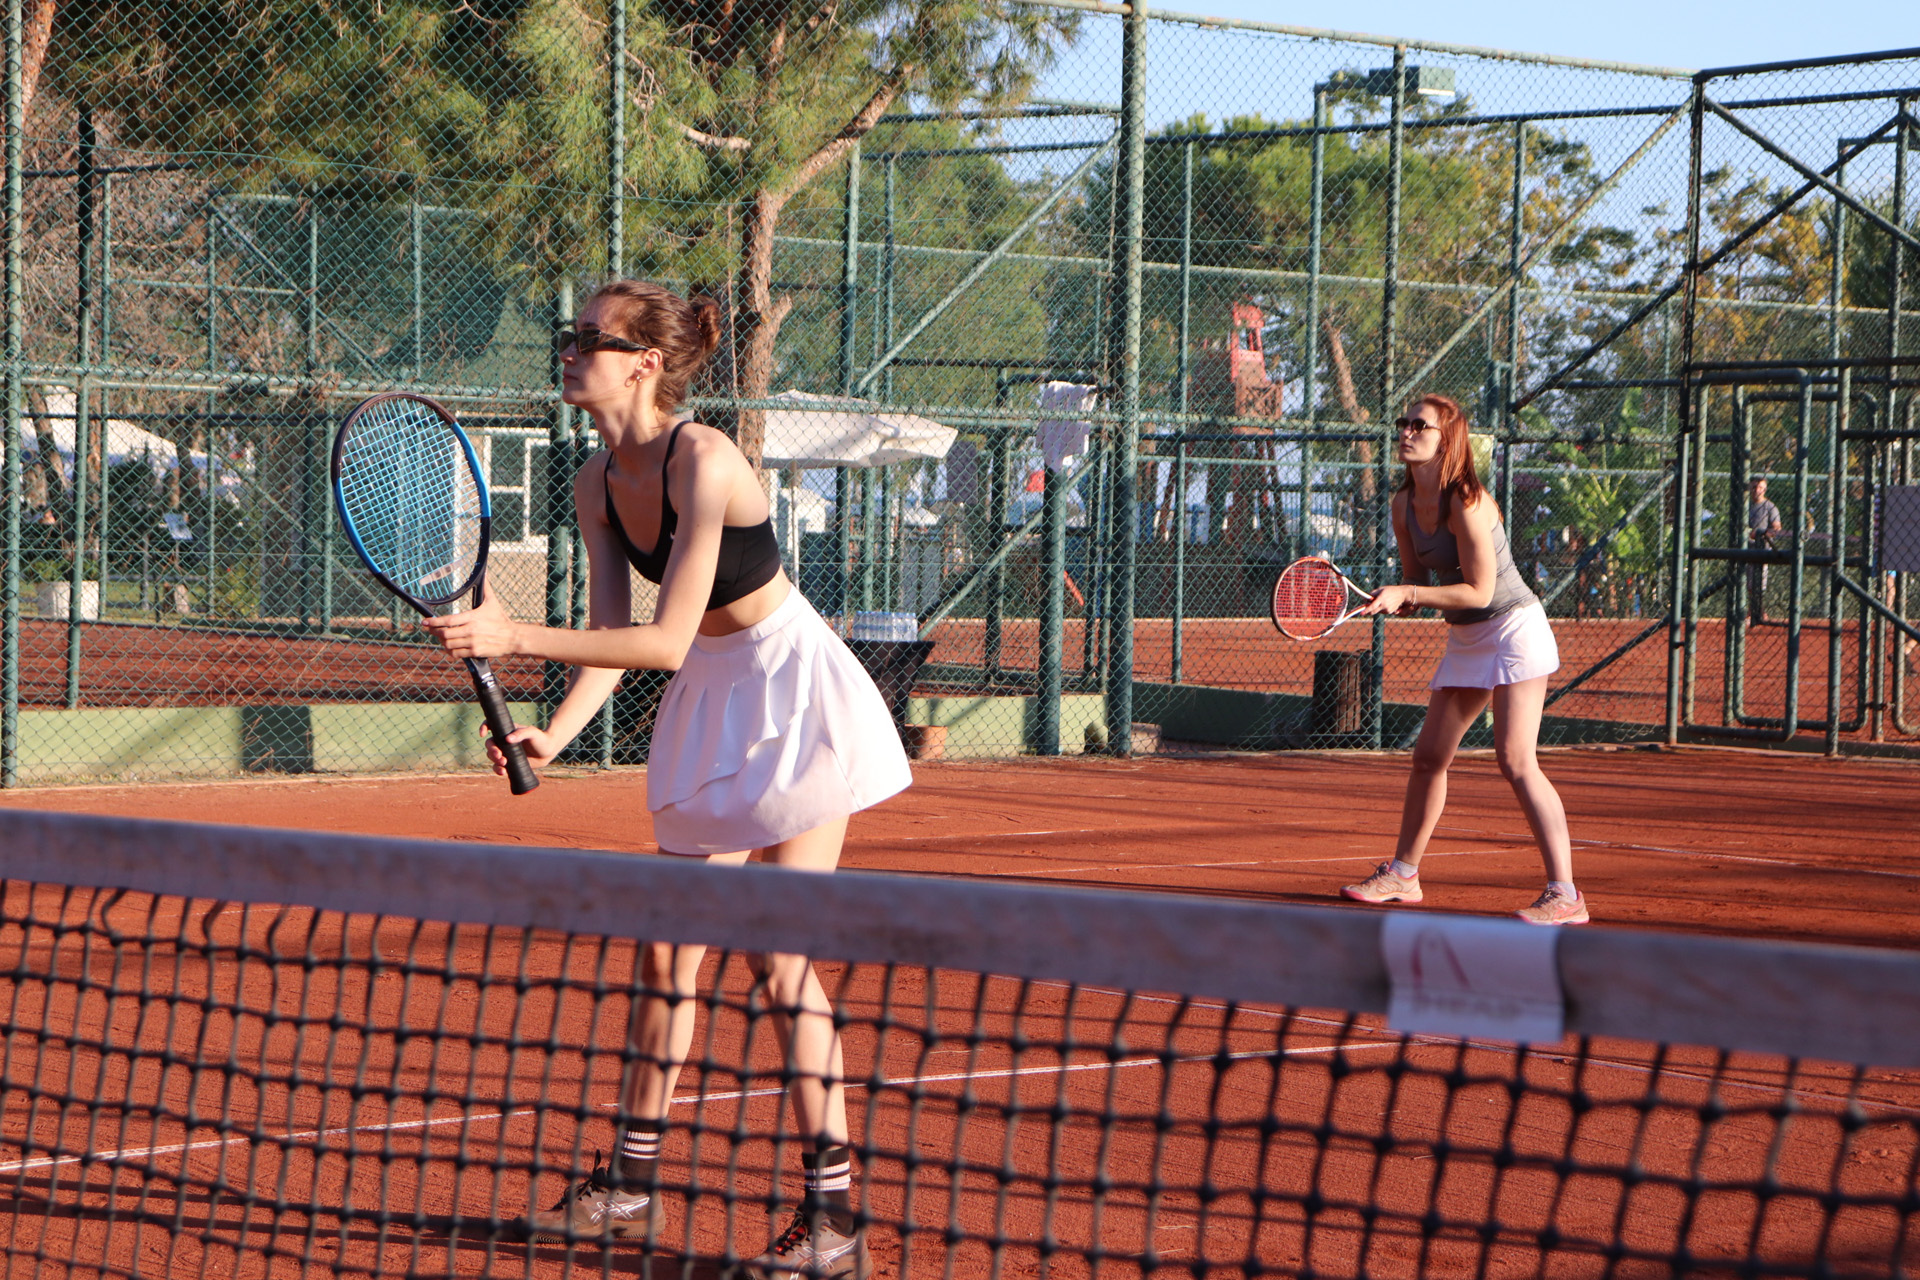 Лагерь и турниры по теннису в Турции 23 апреля 9 мая (2 заезда). Активный  отдых для любого возраста и уровня подготовки!